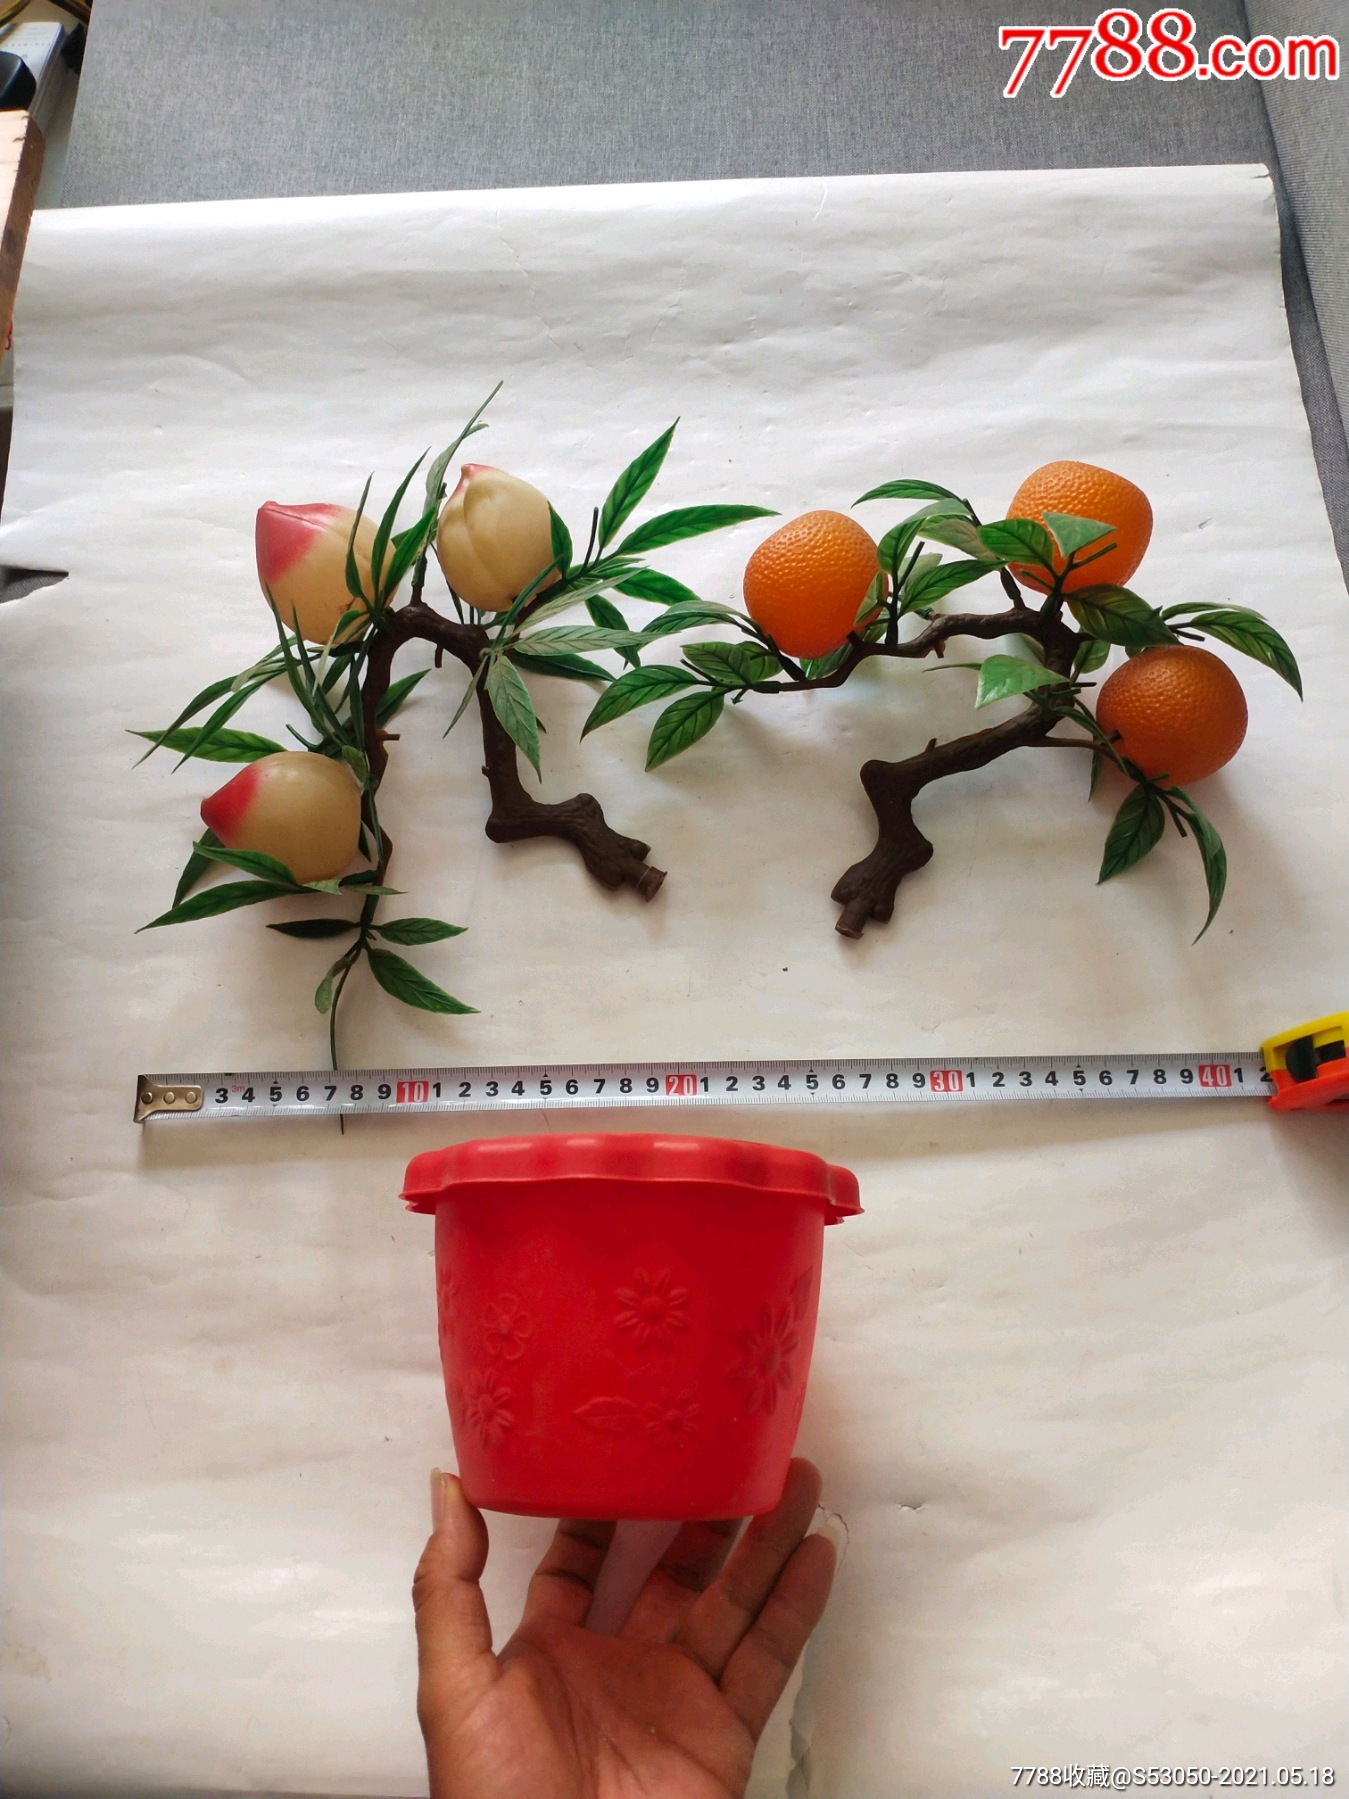 摘橘子去喽 - 多彩的一天 - 杭州市德胜幼儿园